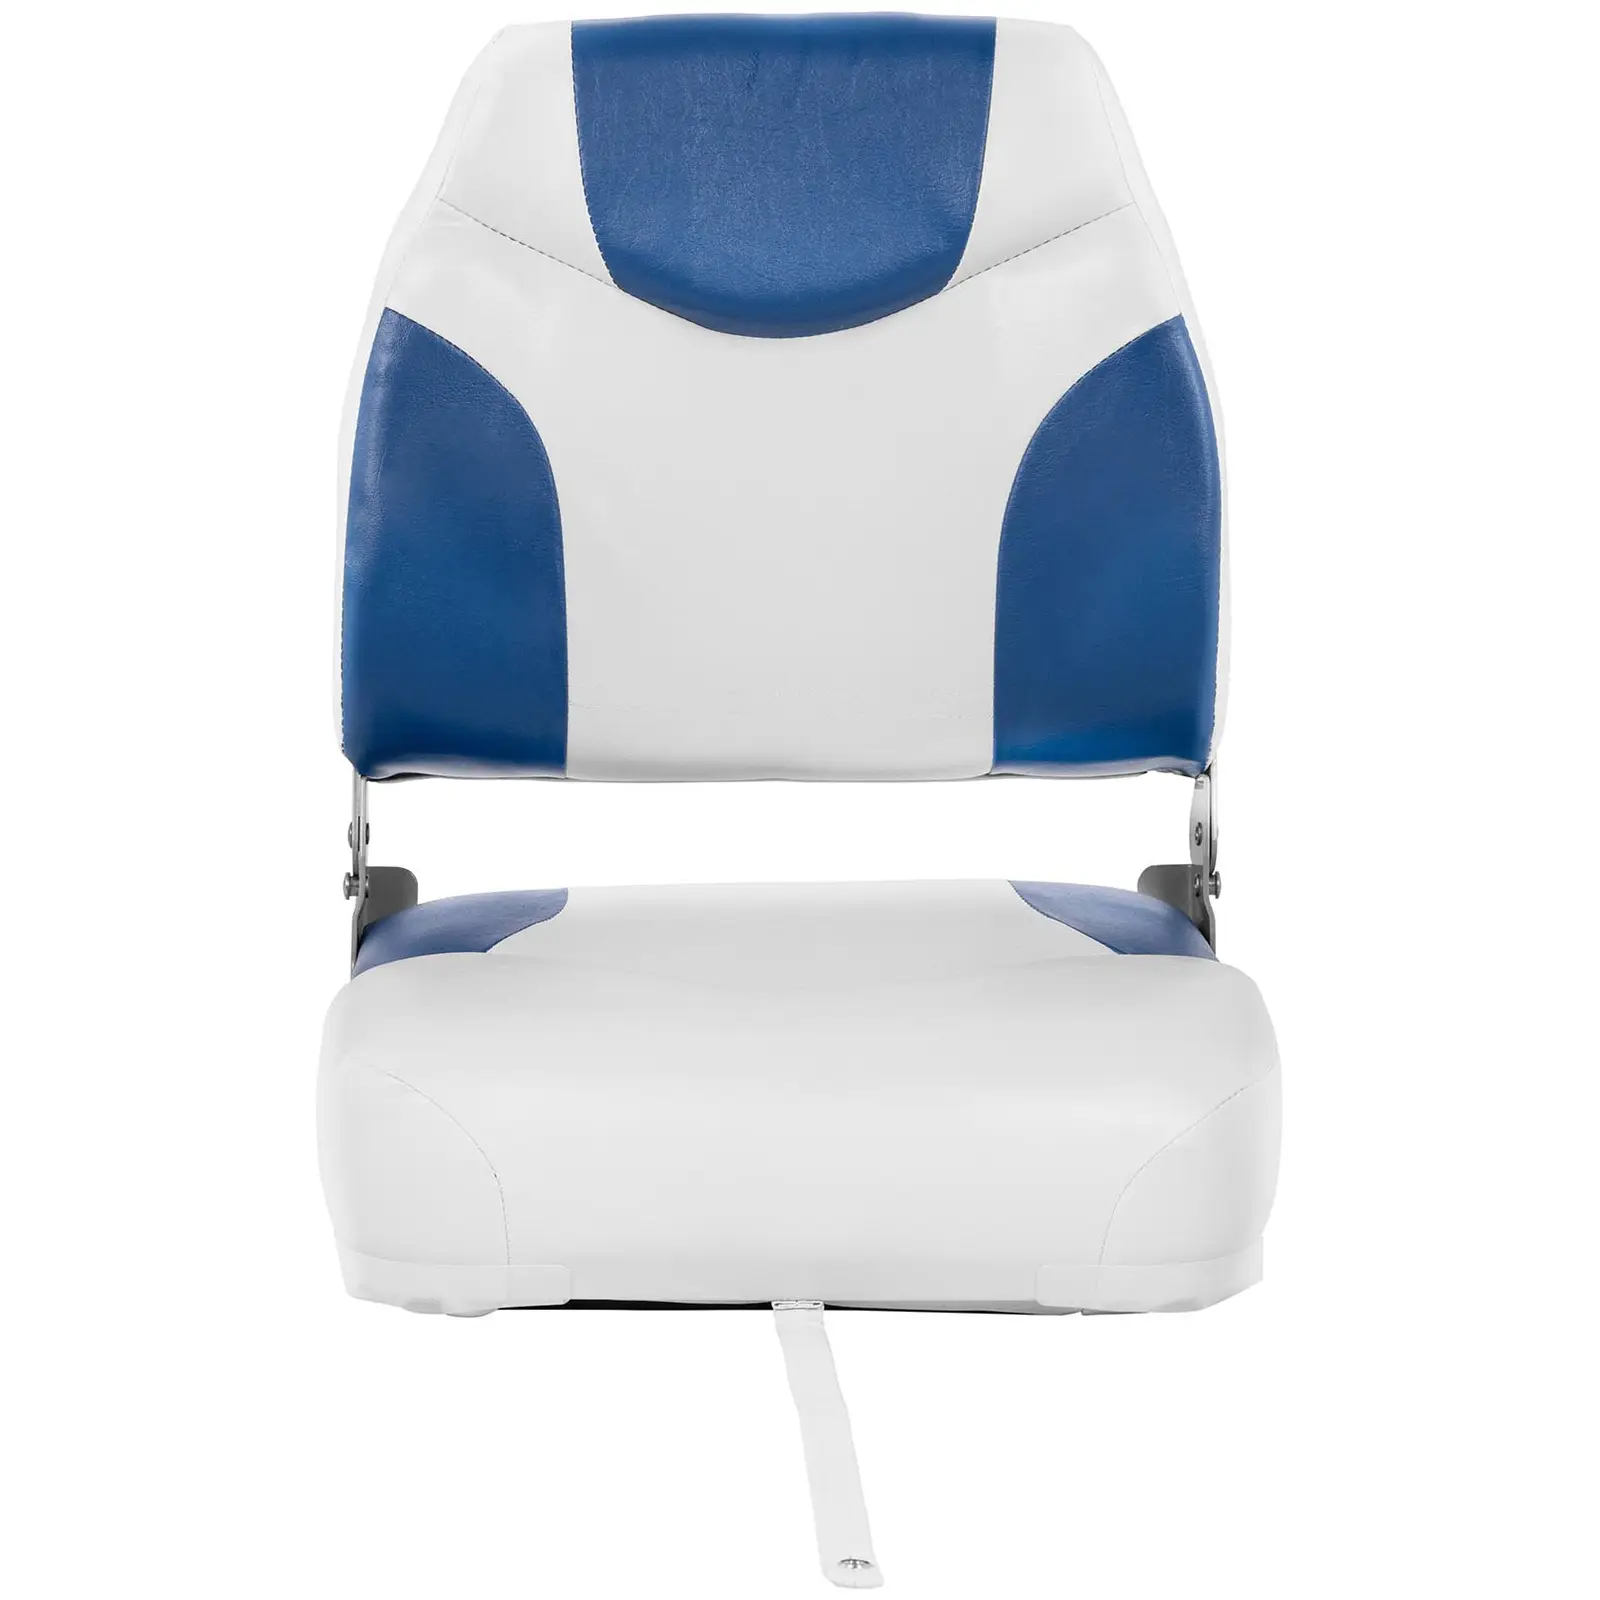 Bootssitz - 42 x 50 x 51 cm - Blau, Weiß